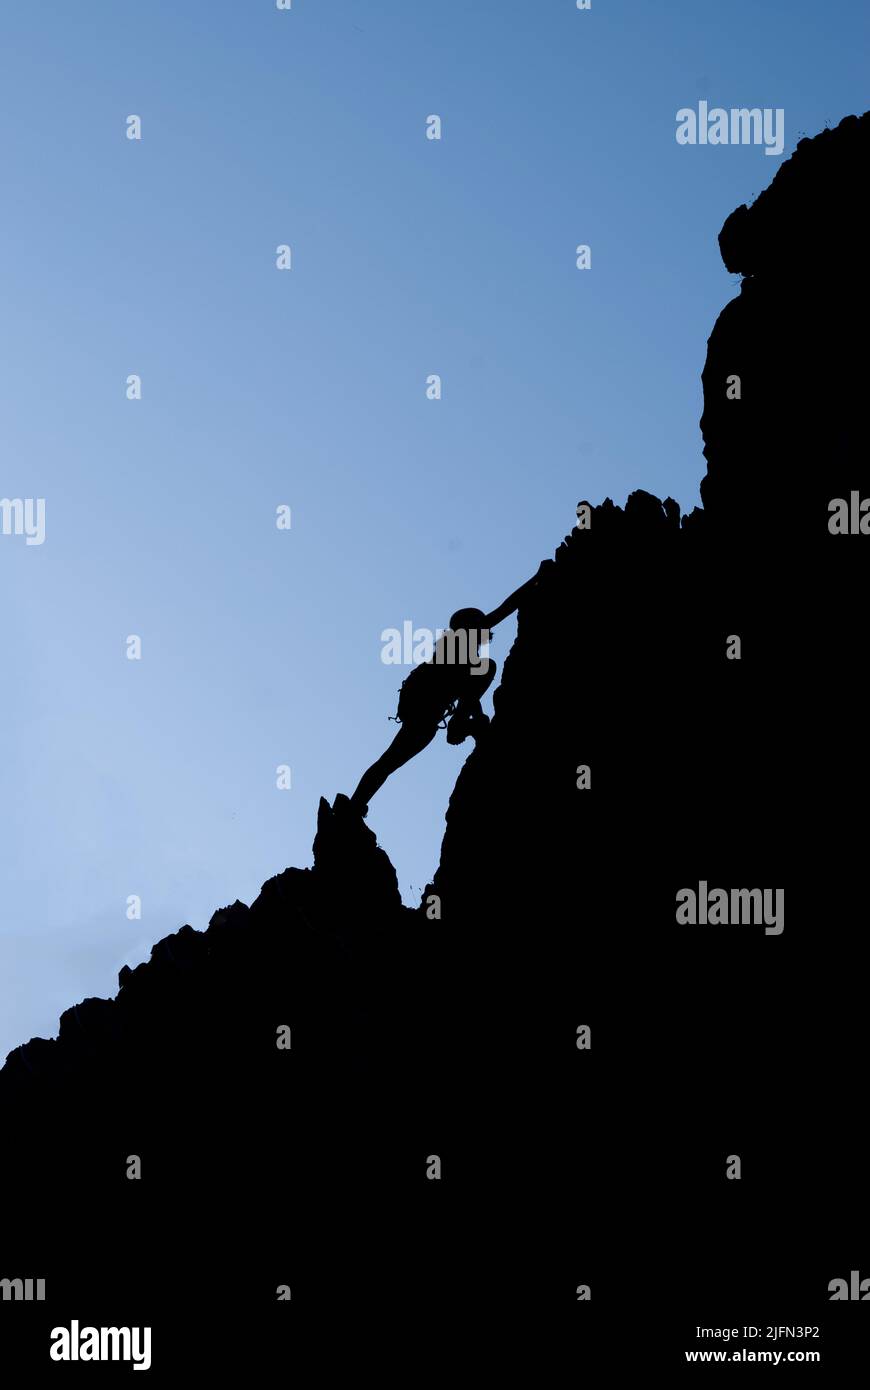 Silhouette einer erfolgreichen jungen Kletterin den Bergen Konzept von Selbstverbesserung, Motivation, Bewegungs-Inspiration, Motivationszielen. Adve Stockfoto